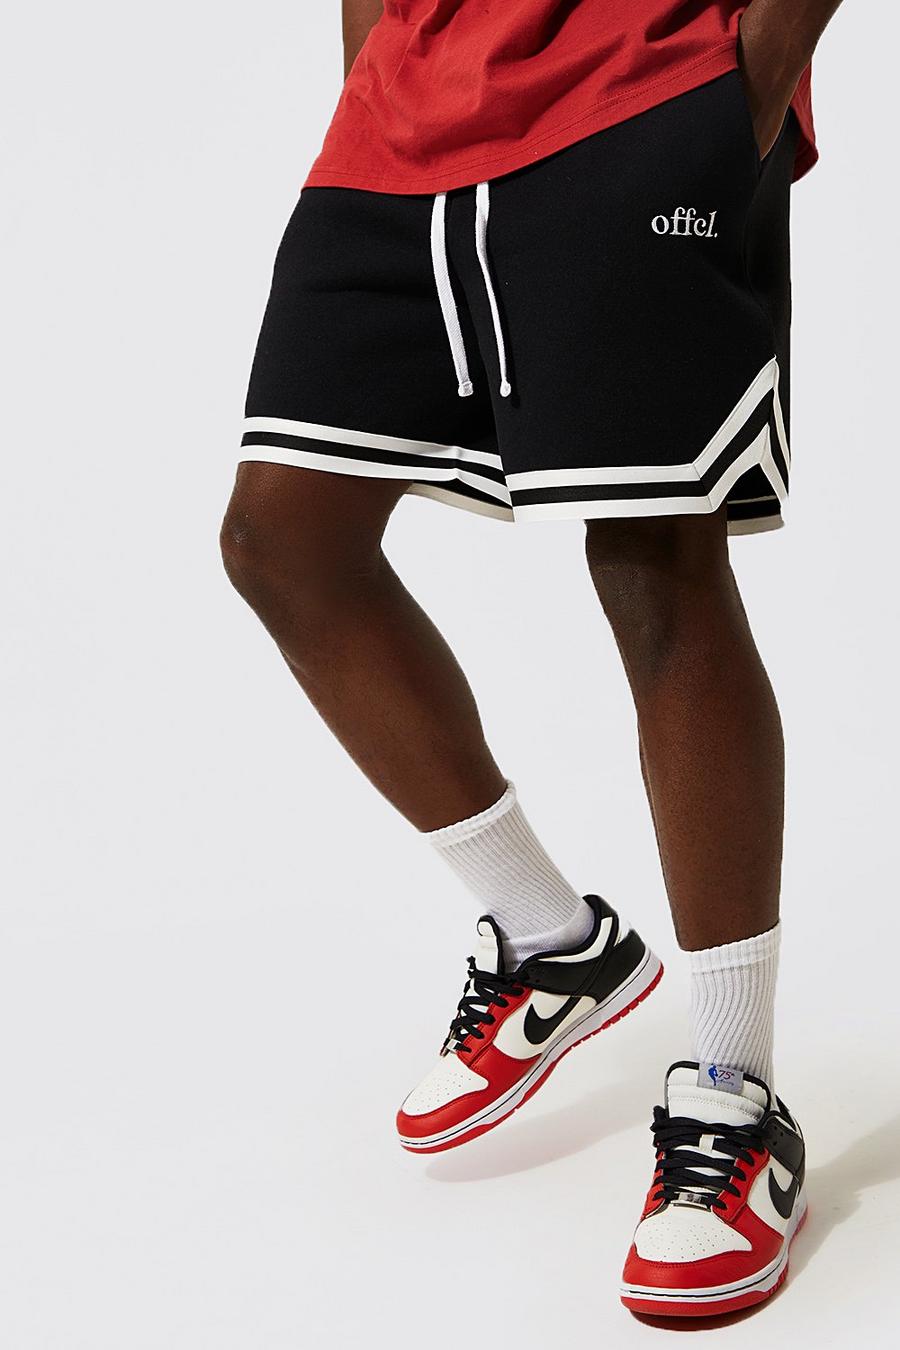 Pantalón corto con estampado Offcl de baloncesto y línea, Black negro